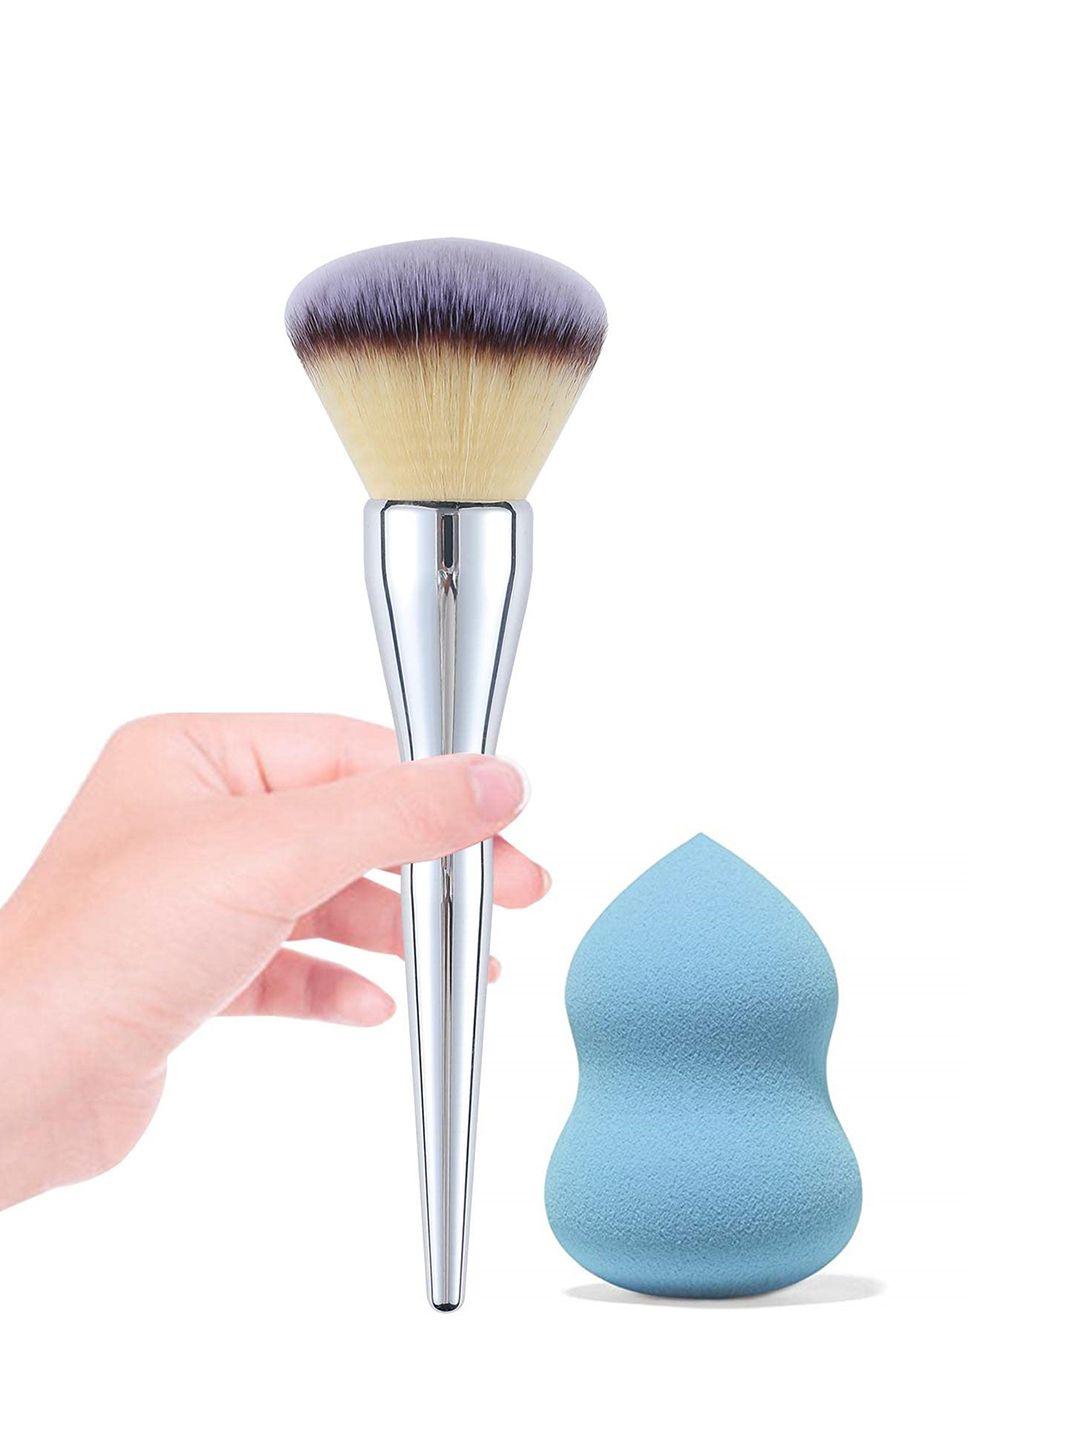 majestique set of makeup foundation brush & blender sponge - blue